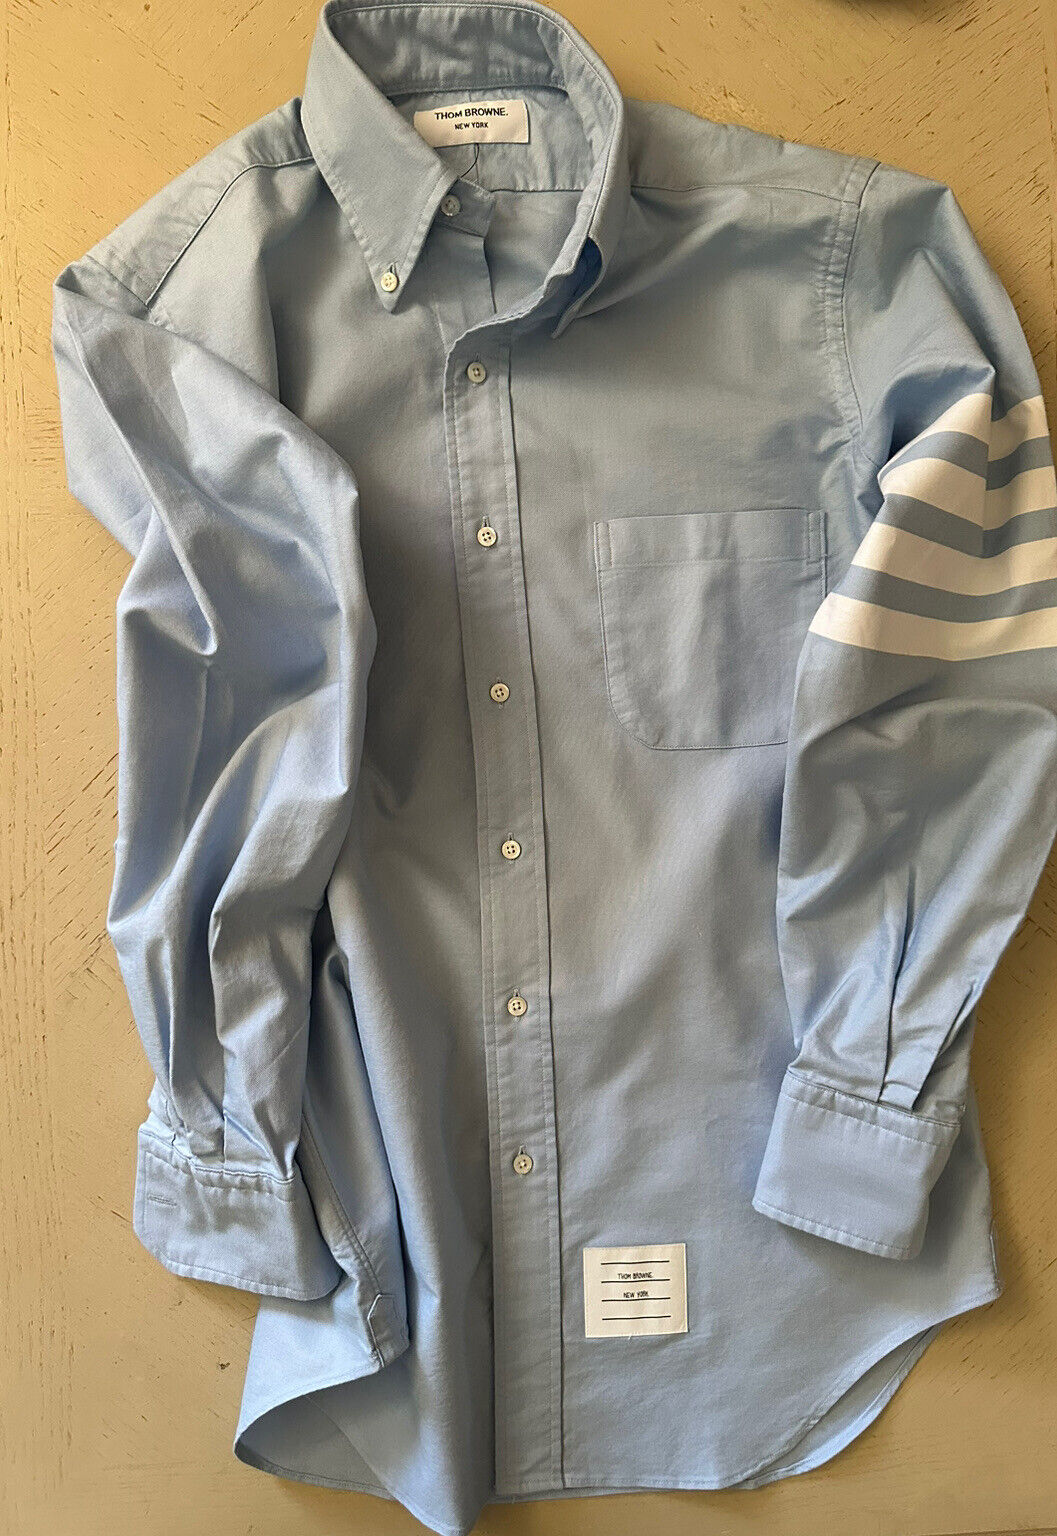 NWT Thom Browne Мужская рубашка в полоску с длинным рукавом с 4 полосками, синяя, размер 2 (M)